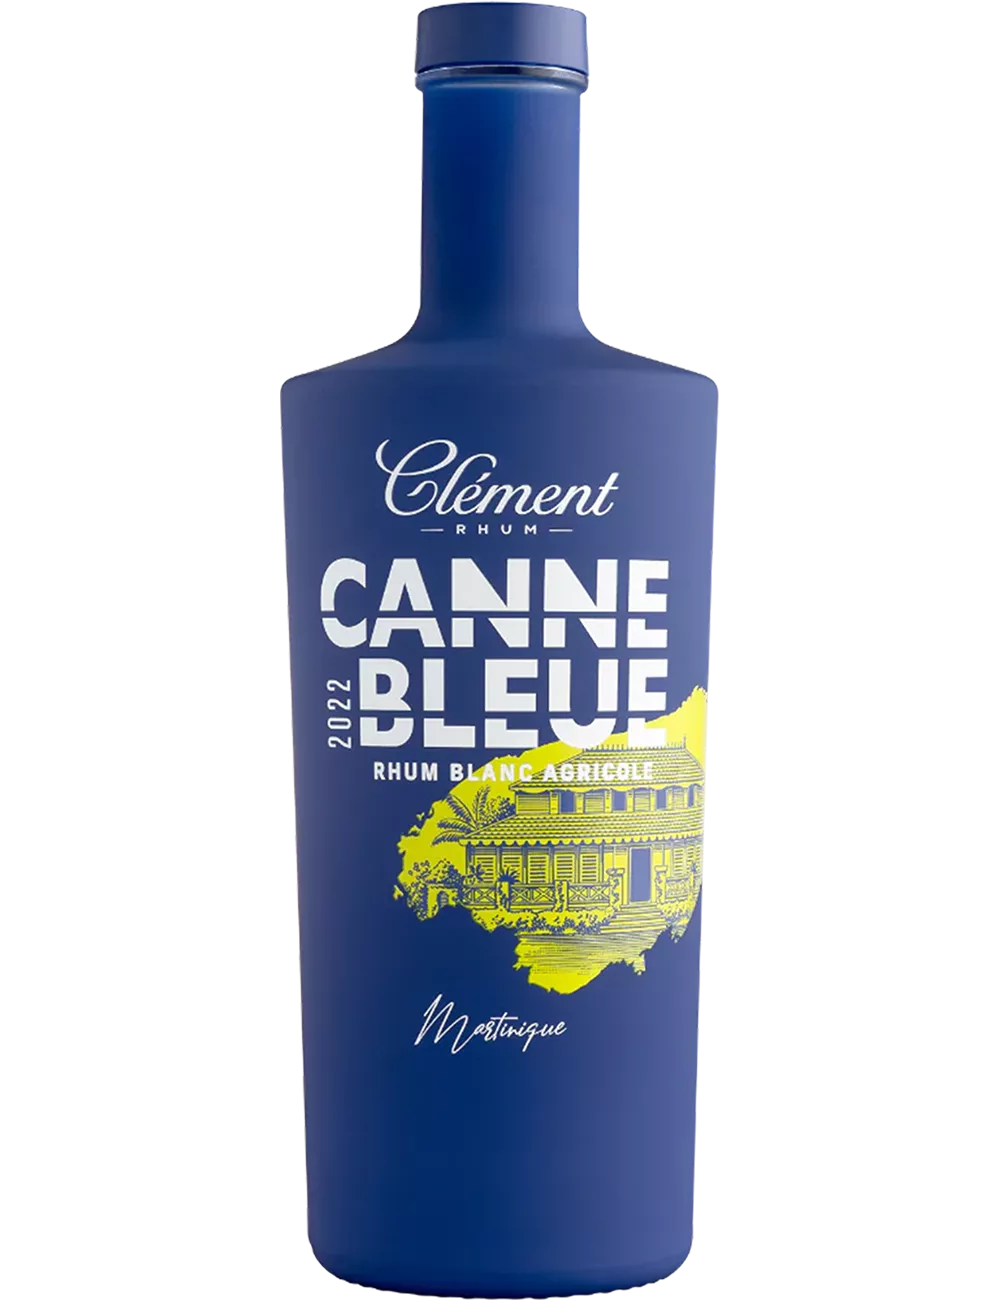 Clément - Canne Bleue - 2020 - Rhum blanc agricole